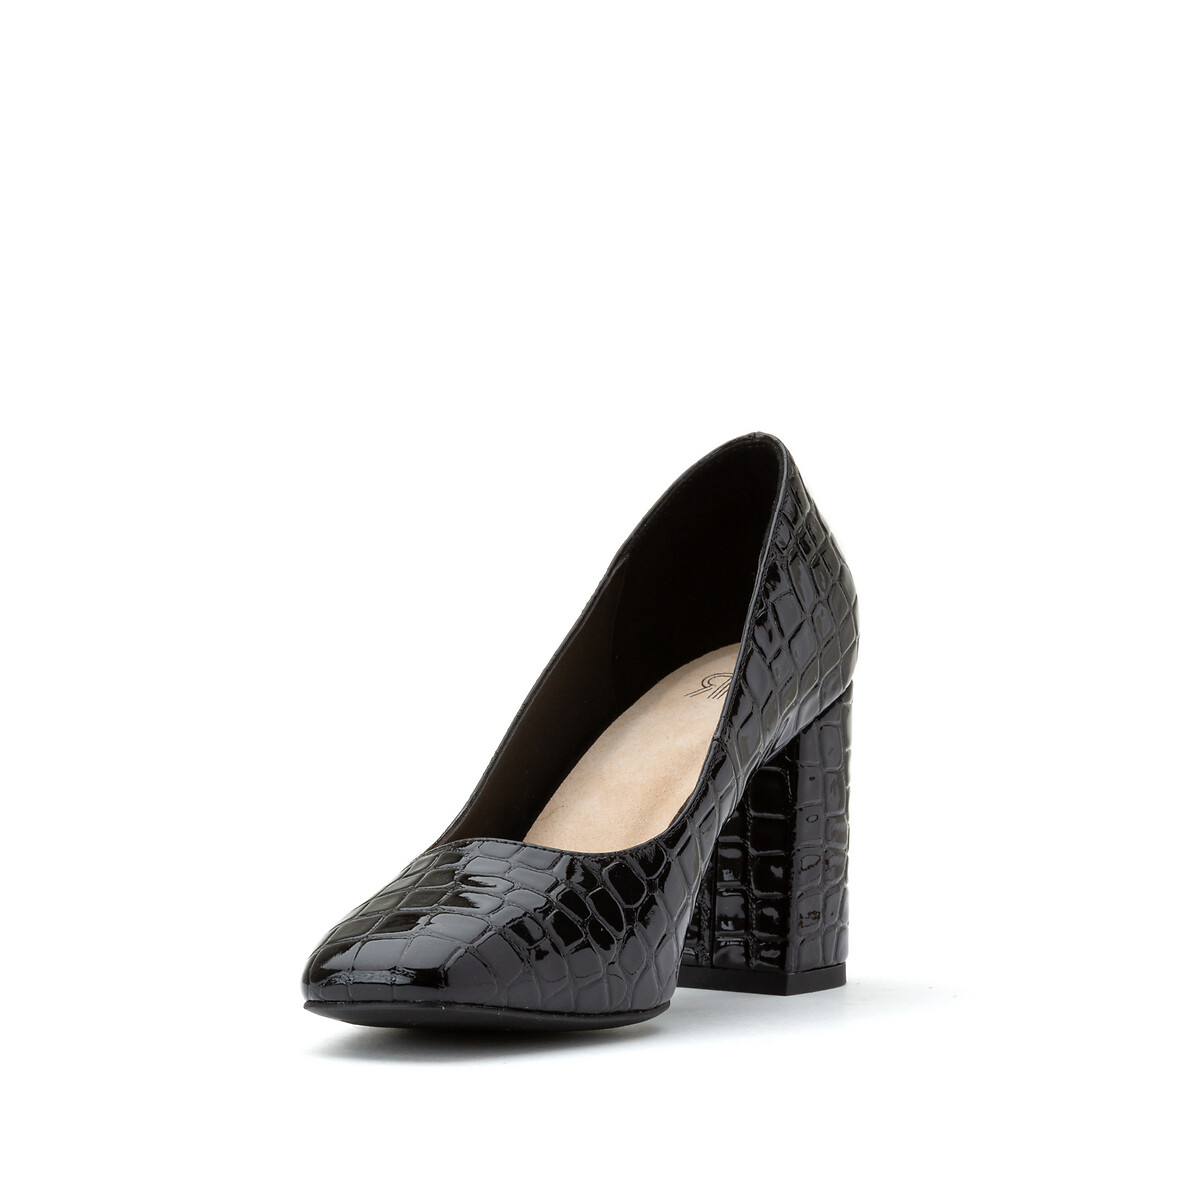 Туфли La Redoute На высоком каблуке с эффектом крокодиловой кожи 39 черный, размер 39 - фото 2